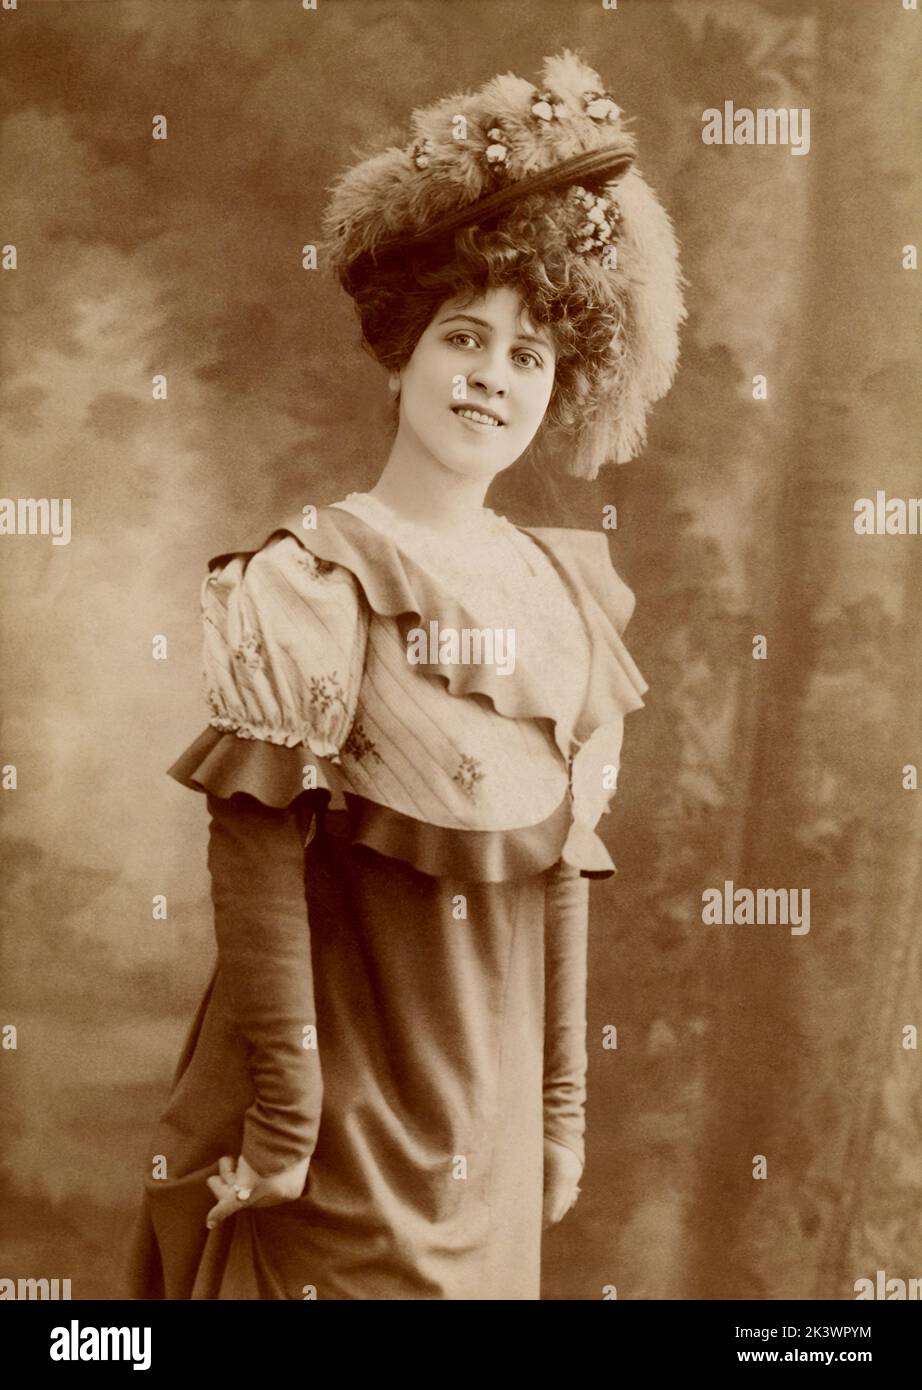 1899 ca, Paris , FRANKREICH : die schauspielerin BRESIL ( 1880 - 1961 ), die im französischen Theater und Stummfilm geboren wurde, ist Marguerite Lucile Brésil Neurdein. Foto von Jean Reutlinger ( 1875 - 1917 ) . - TEATRO - THEATER - KINO MUTO - FRANCIA - RITRATTO - PORTRAIT - MODE - MODA FEMMINILE - HUT - CAPPELLO - DIVA - DIVINA - BELLE EPOQUE - STRAUSSENFEDERN - PIUME DI STRUZZO - LÄCHELN - SORRISO - GESCHICHTE - FOTO STORICHE - PORTRAIT - RITRATTO -- - ARCHIVIO GBB Stockfoto